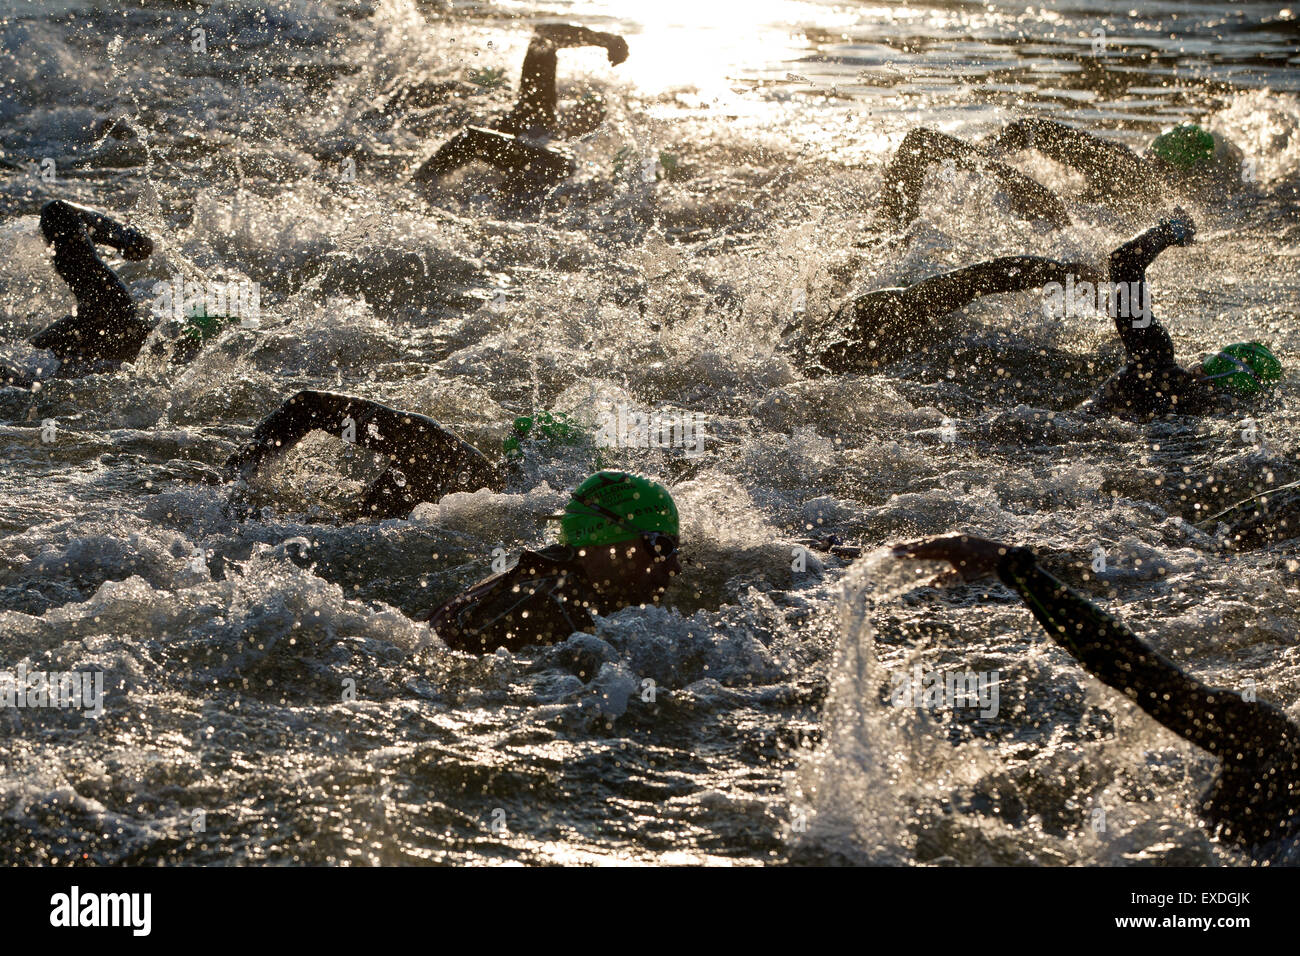 Hilpoltstein, Alemania. 12 de julio de 2015. Triatletas compiten en la etapa de natación de 3,8km de que tomen parte en el desafío Datev triathlon en Hilpoltstein Roth, el sur de Alemania, el 12 de julio de 2015. Foto: Daniel Karmann/dpa/Alamy Live News Foto de stock